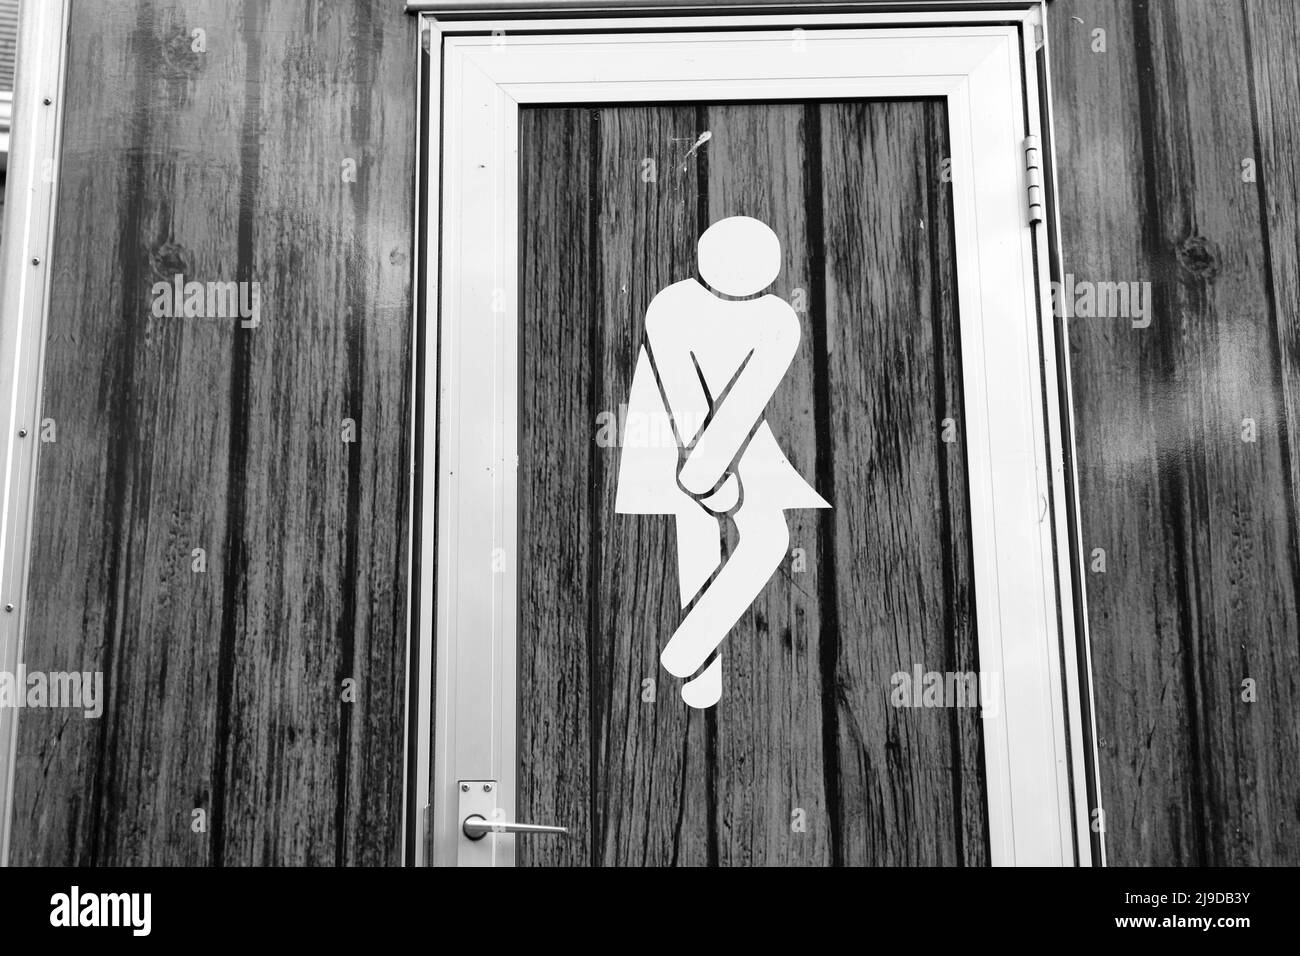 Panneau de toilettes pour femme de toilettes mobiles Londres Angleterre Royaume-Uni Banque D'Images